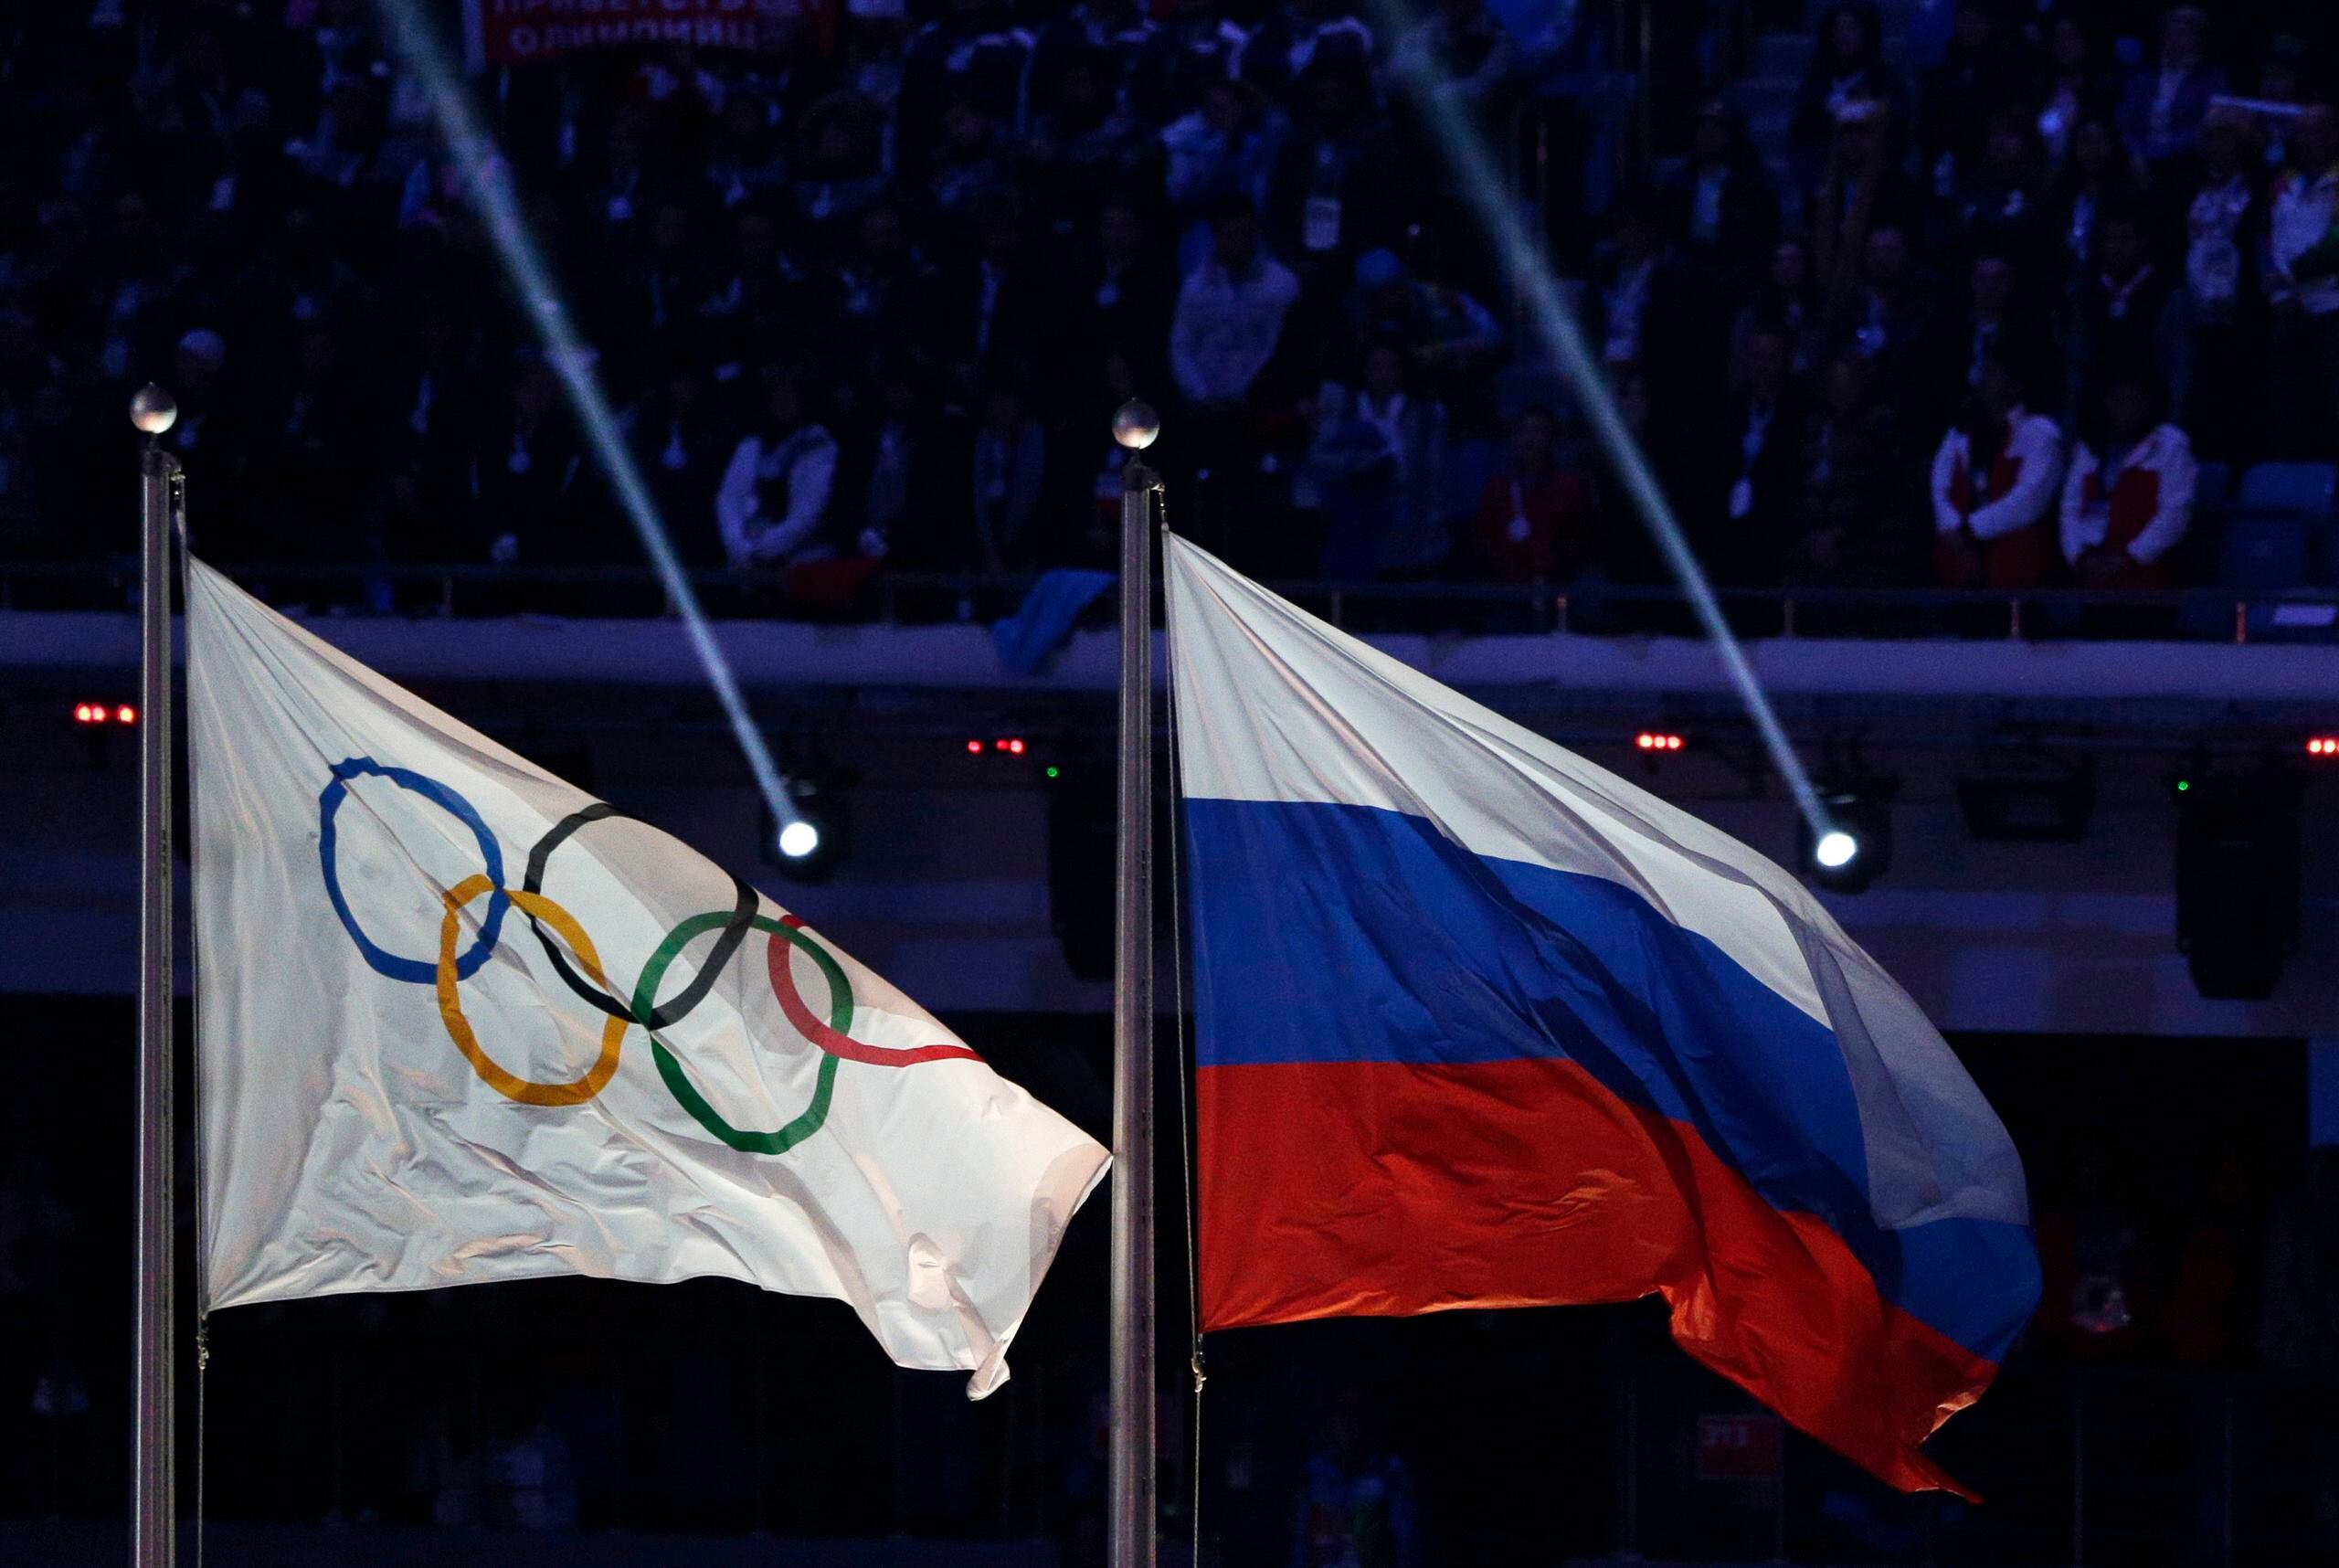 La bandera de Rusia (derecha) aparece aquí junto a la del Movimiento Olímpico durante la ceremonia de clausura de los Juegos Olímpicos de Invierno de 2014 en Sochi, Rusia.